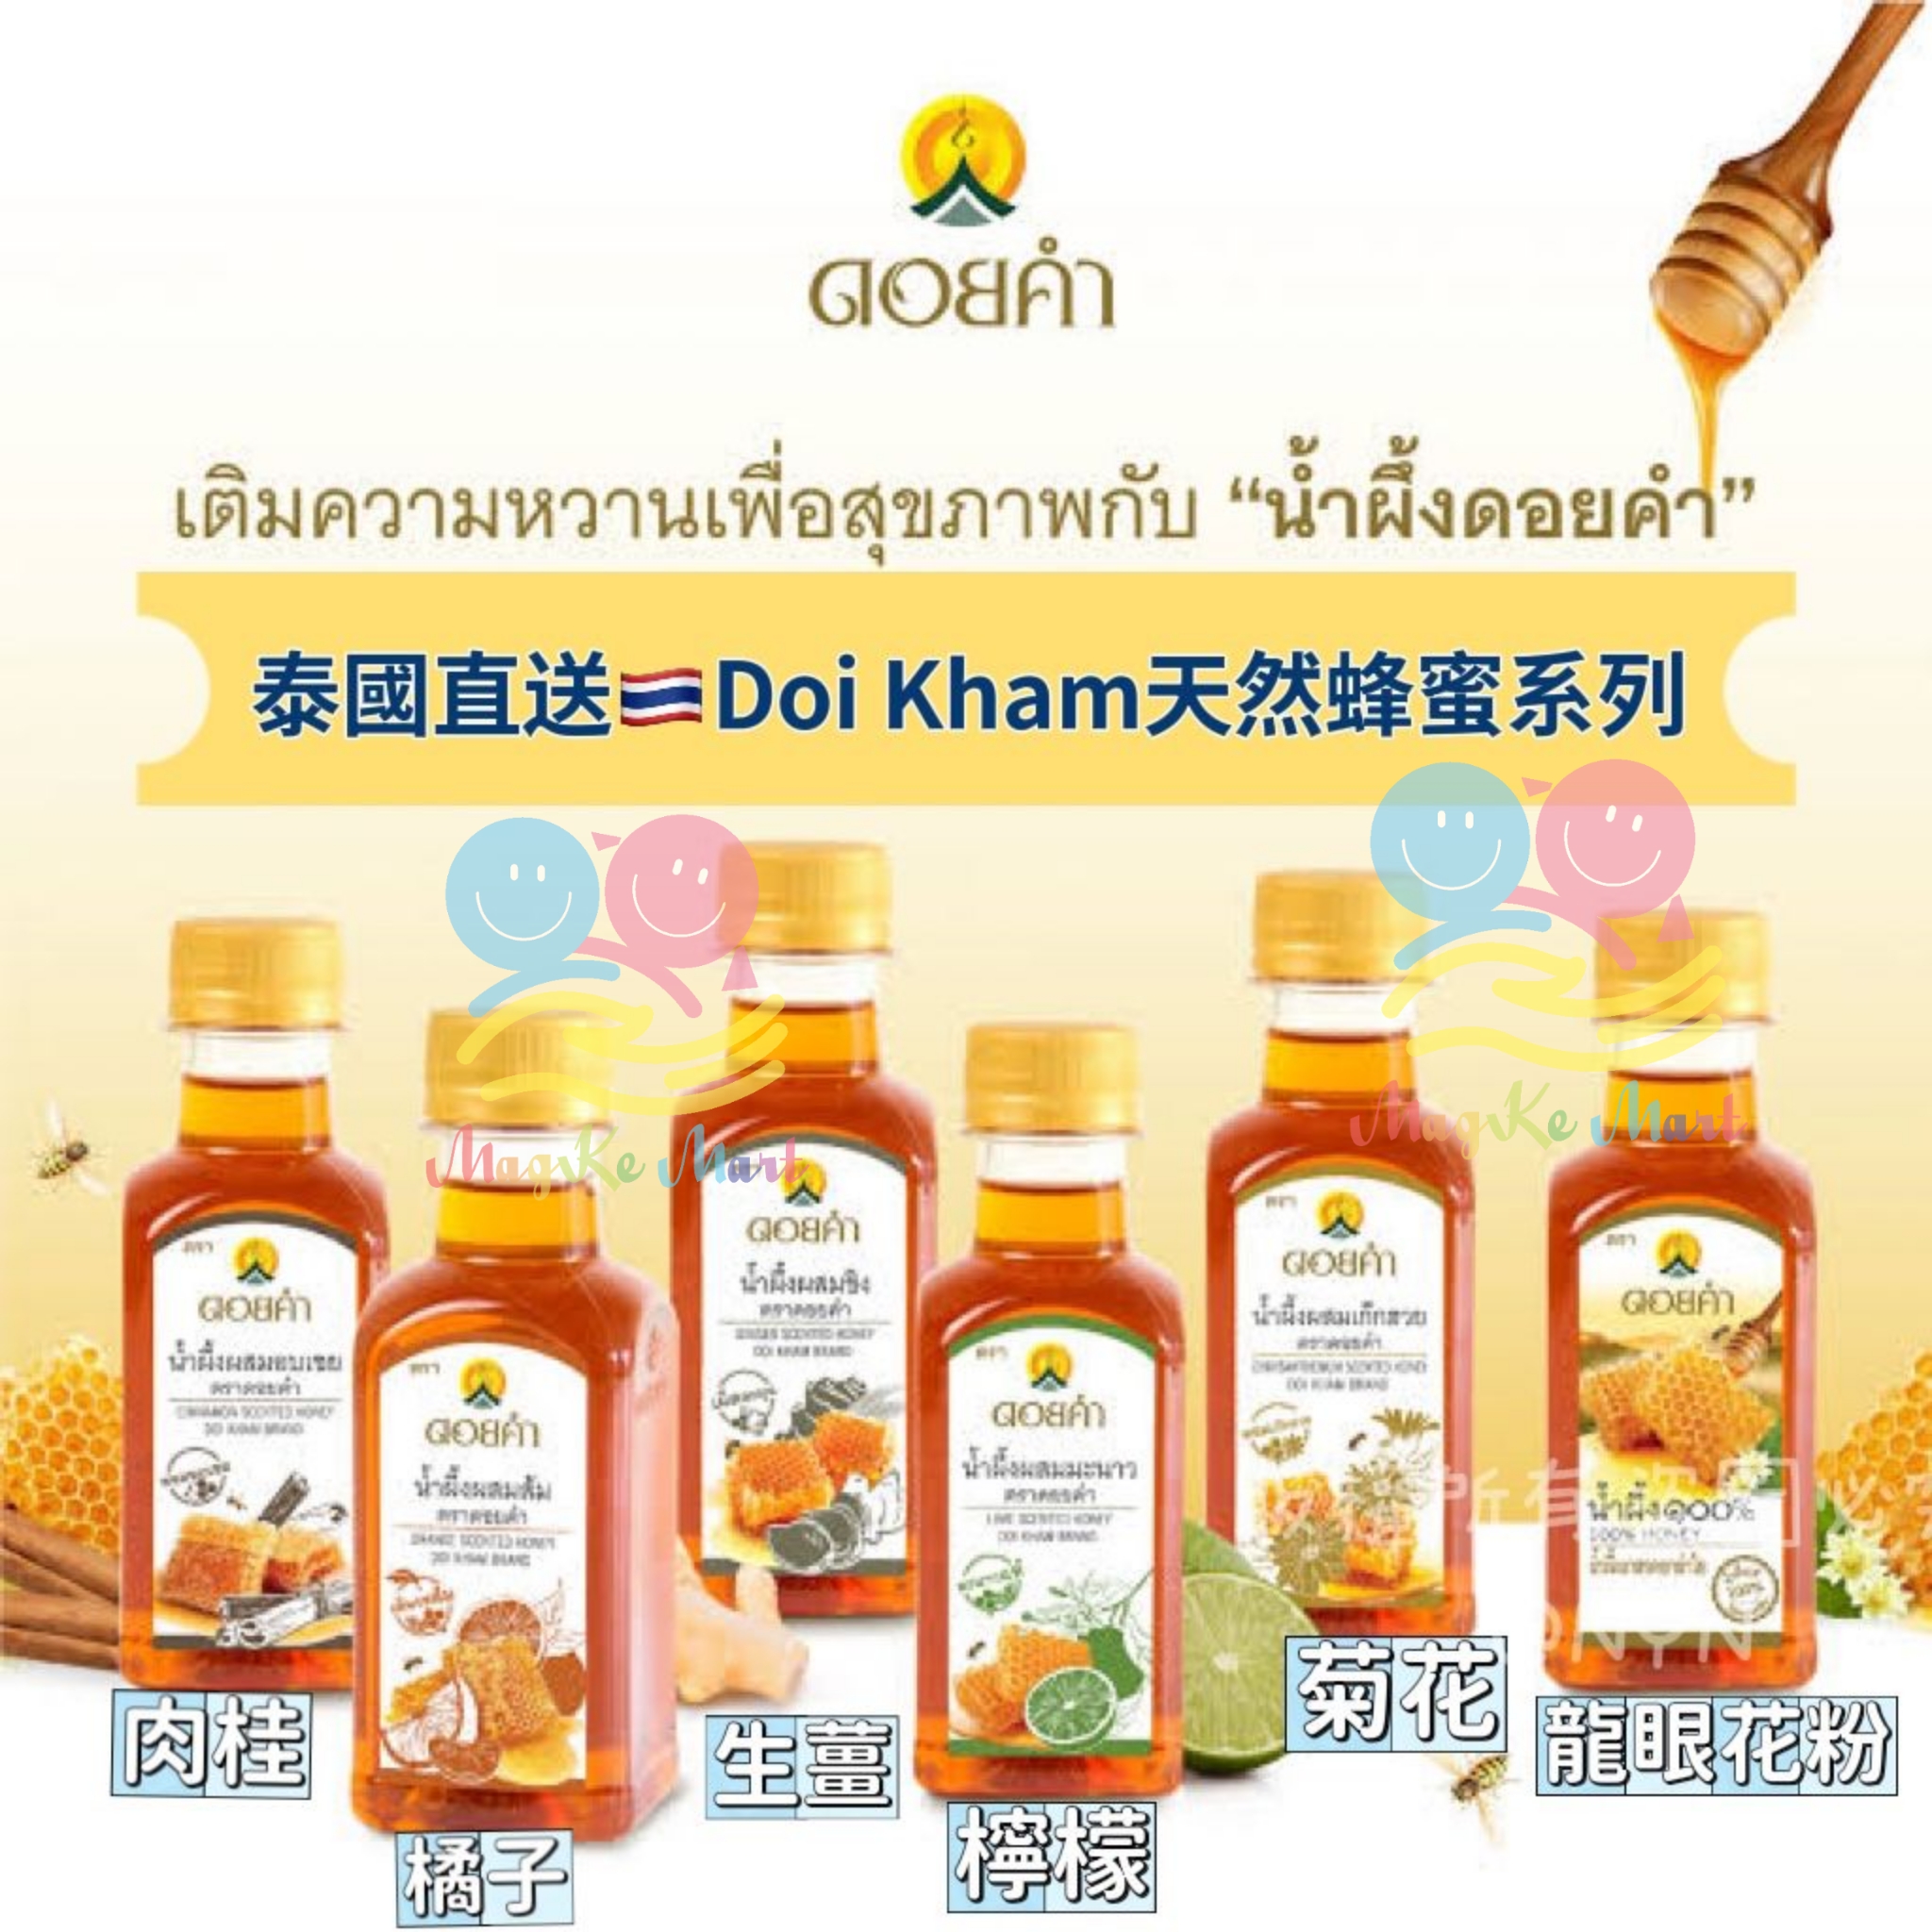 泰國 Doik ham 皇家天然蜂蜜系列 230ml (F) 檸檬